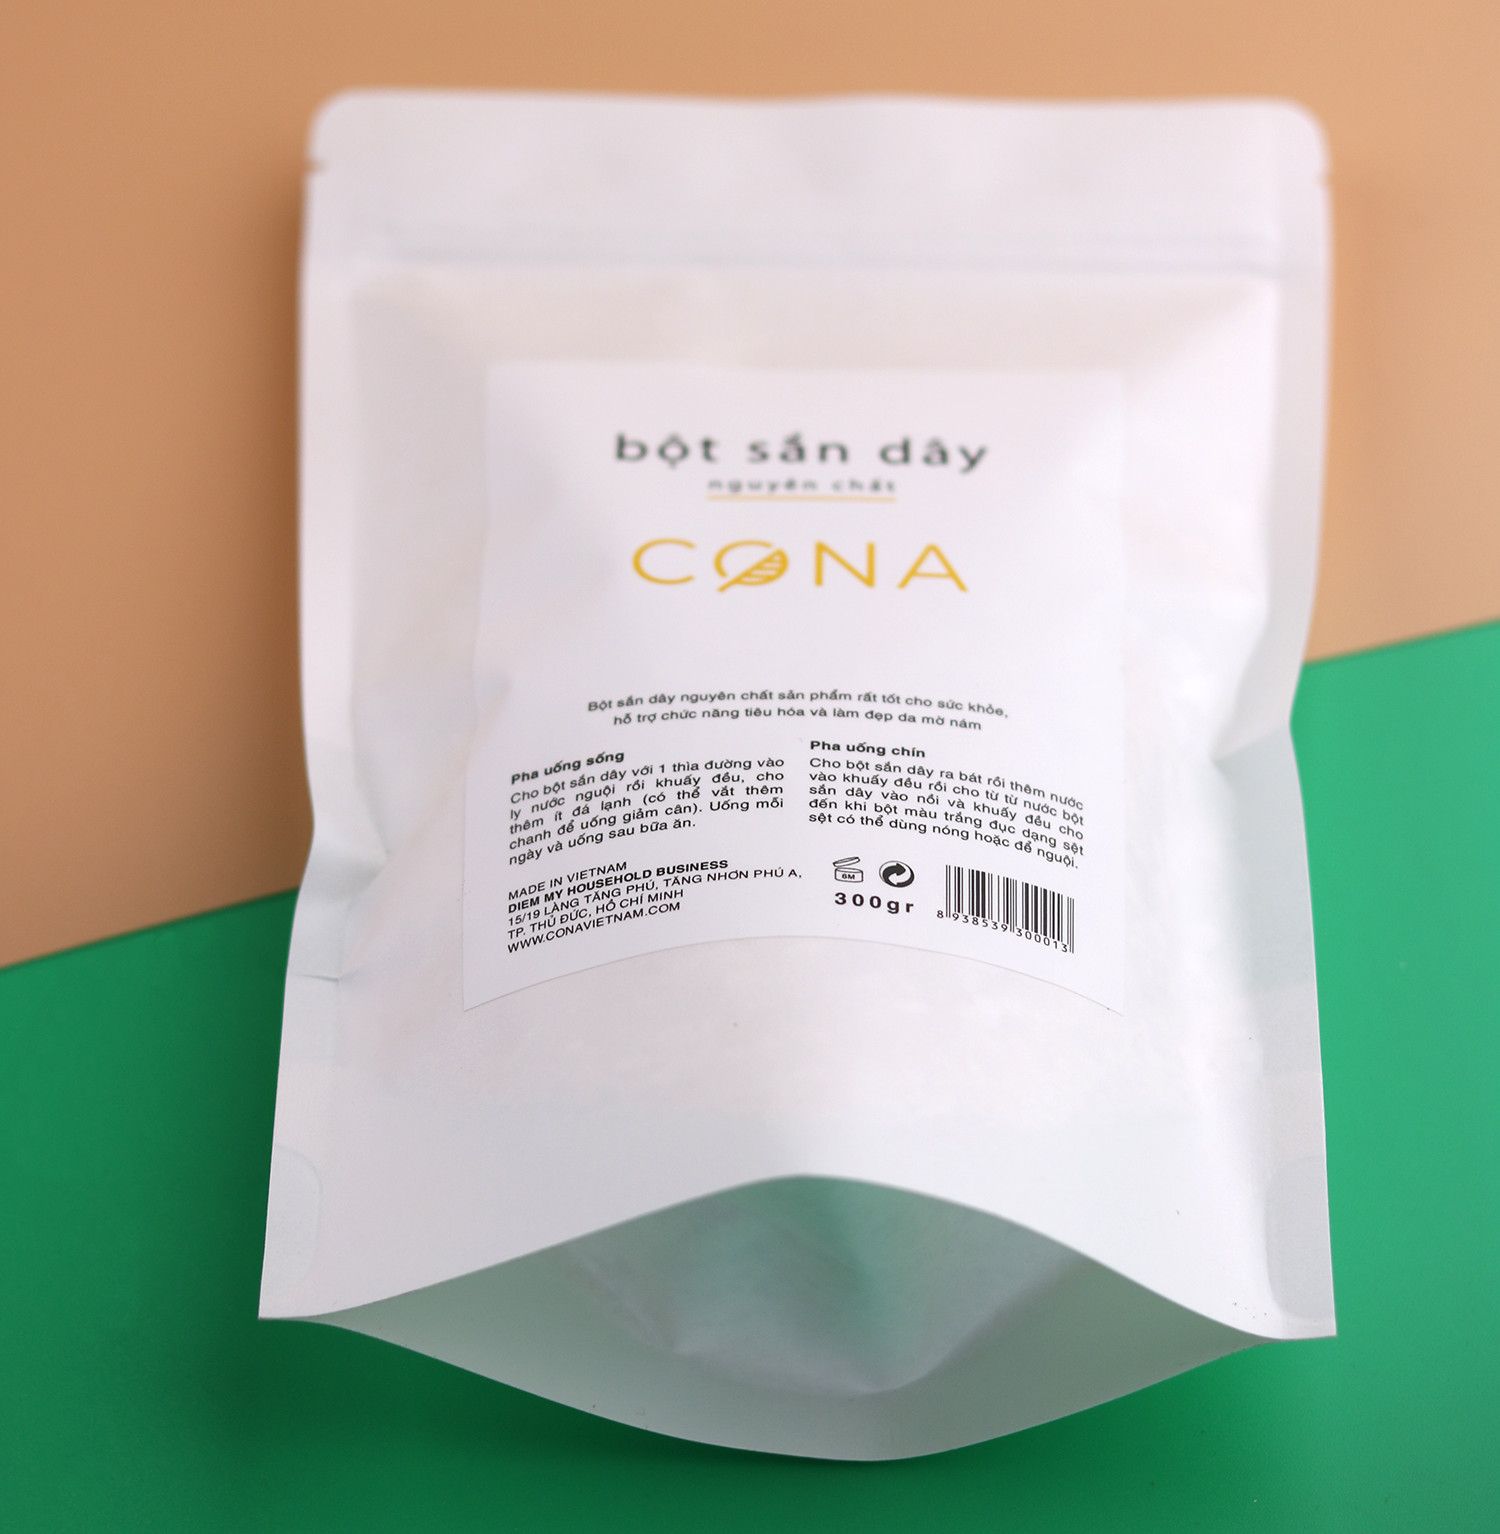 Bột sắn dây nguyên chất CONA tốt cho sức khỏe, làm đẹp da, tăng cường vòng 1, khối lượng 300g không pha trộn